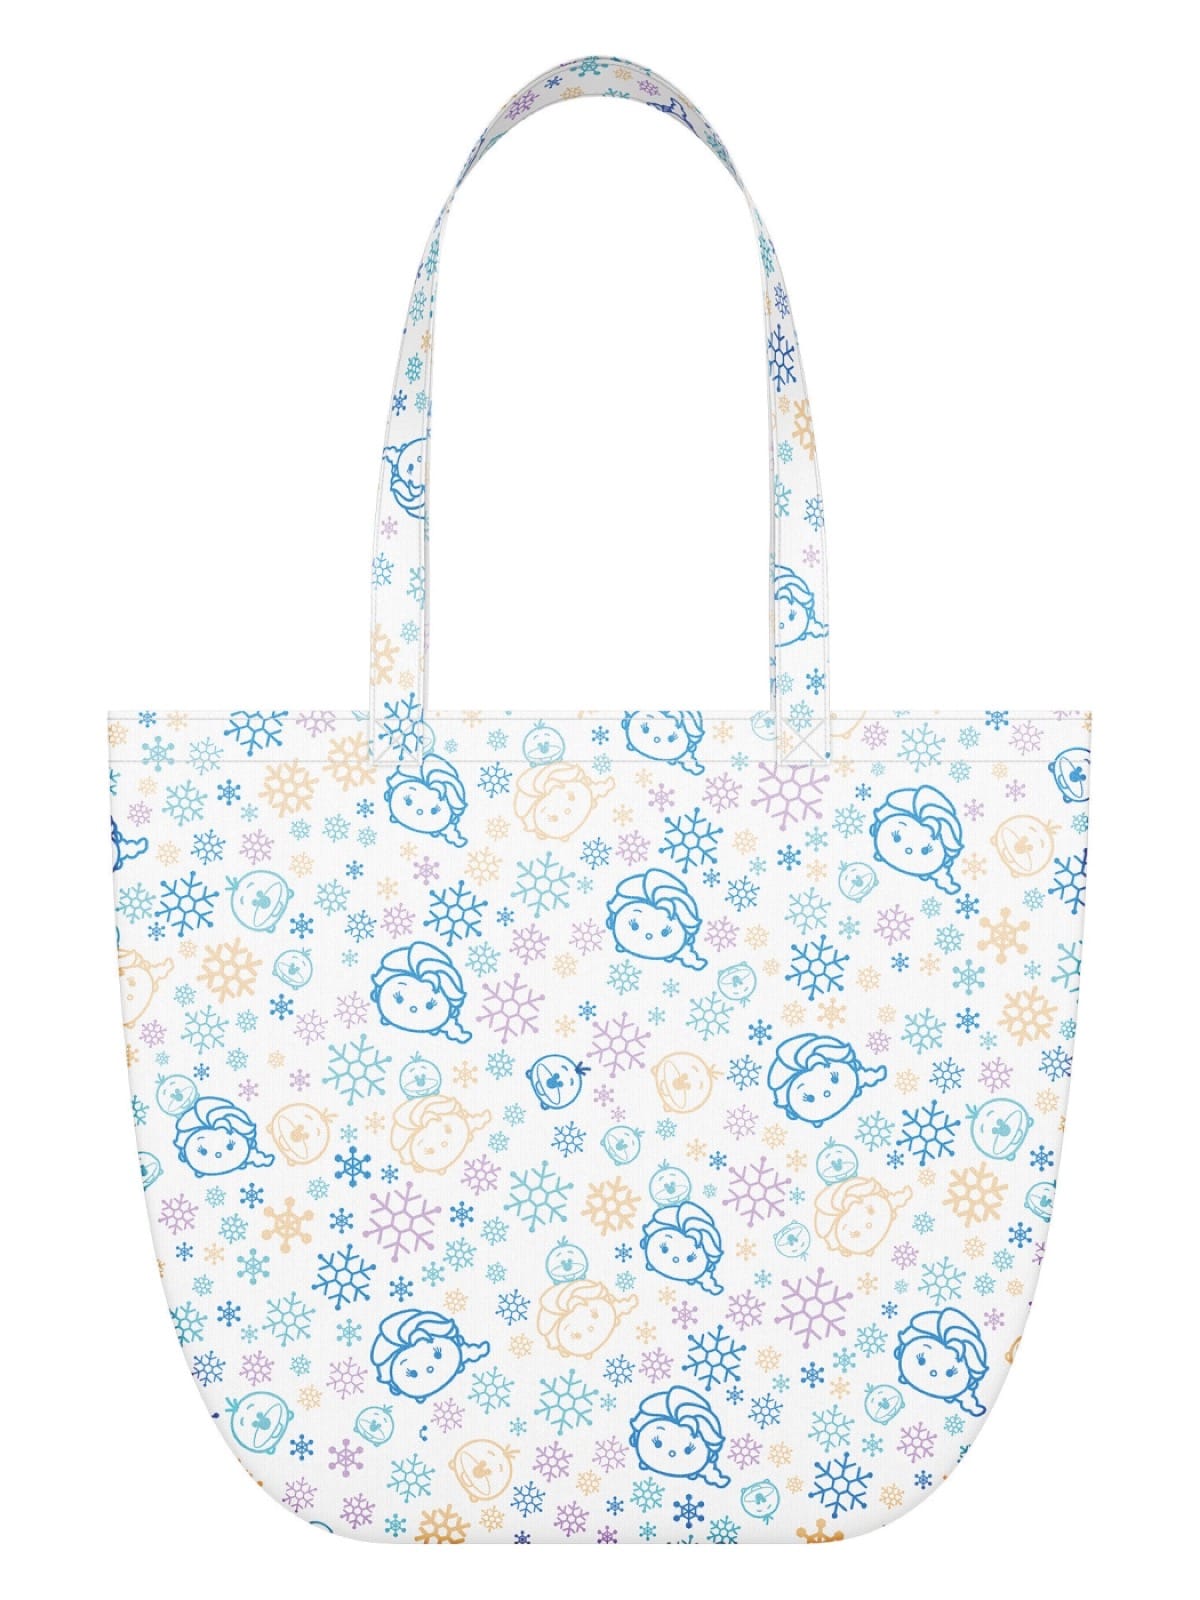 還有更多詳情/圖片[第二擊] 7-Eleven X Disney Tsum Tsum 限量版掛飾環保袋，包幫到你搵到最正嘅優惠呀！